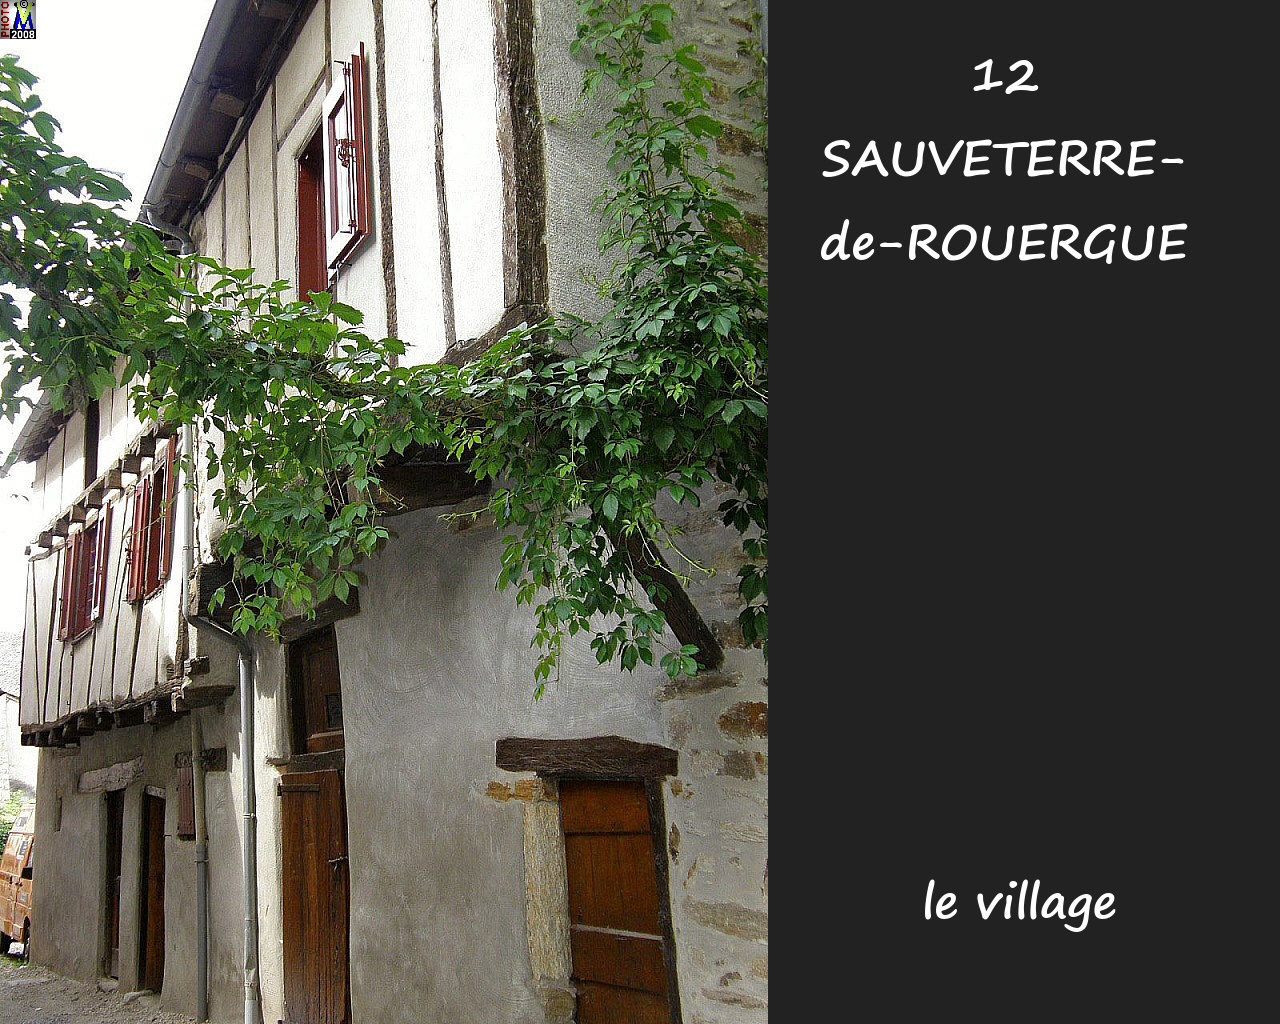 12SAUVETERRE-ROUERGUE_village_154.jpg